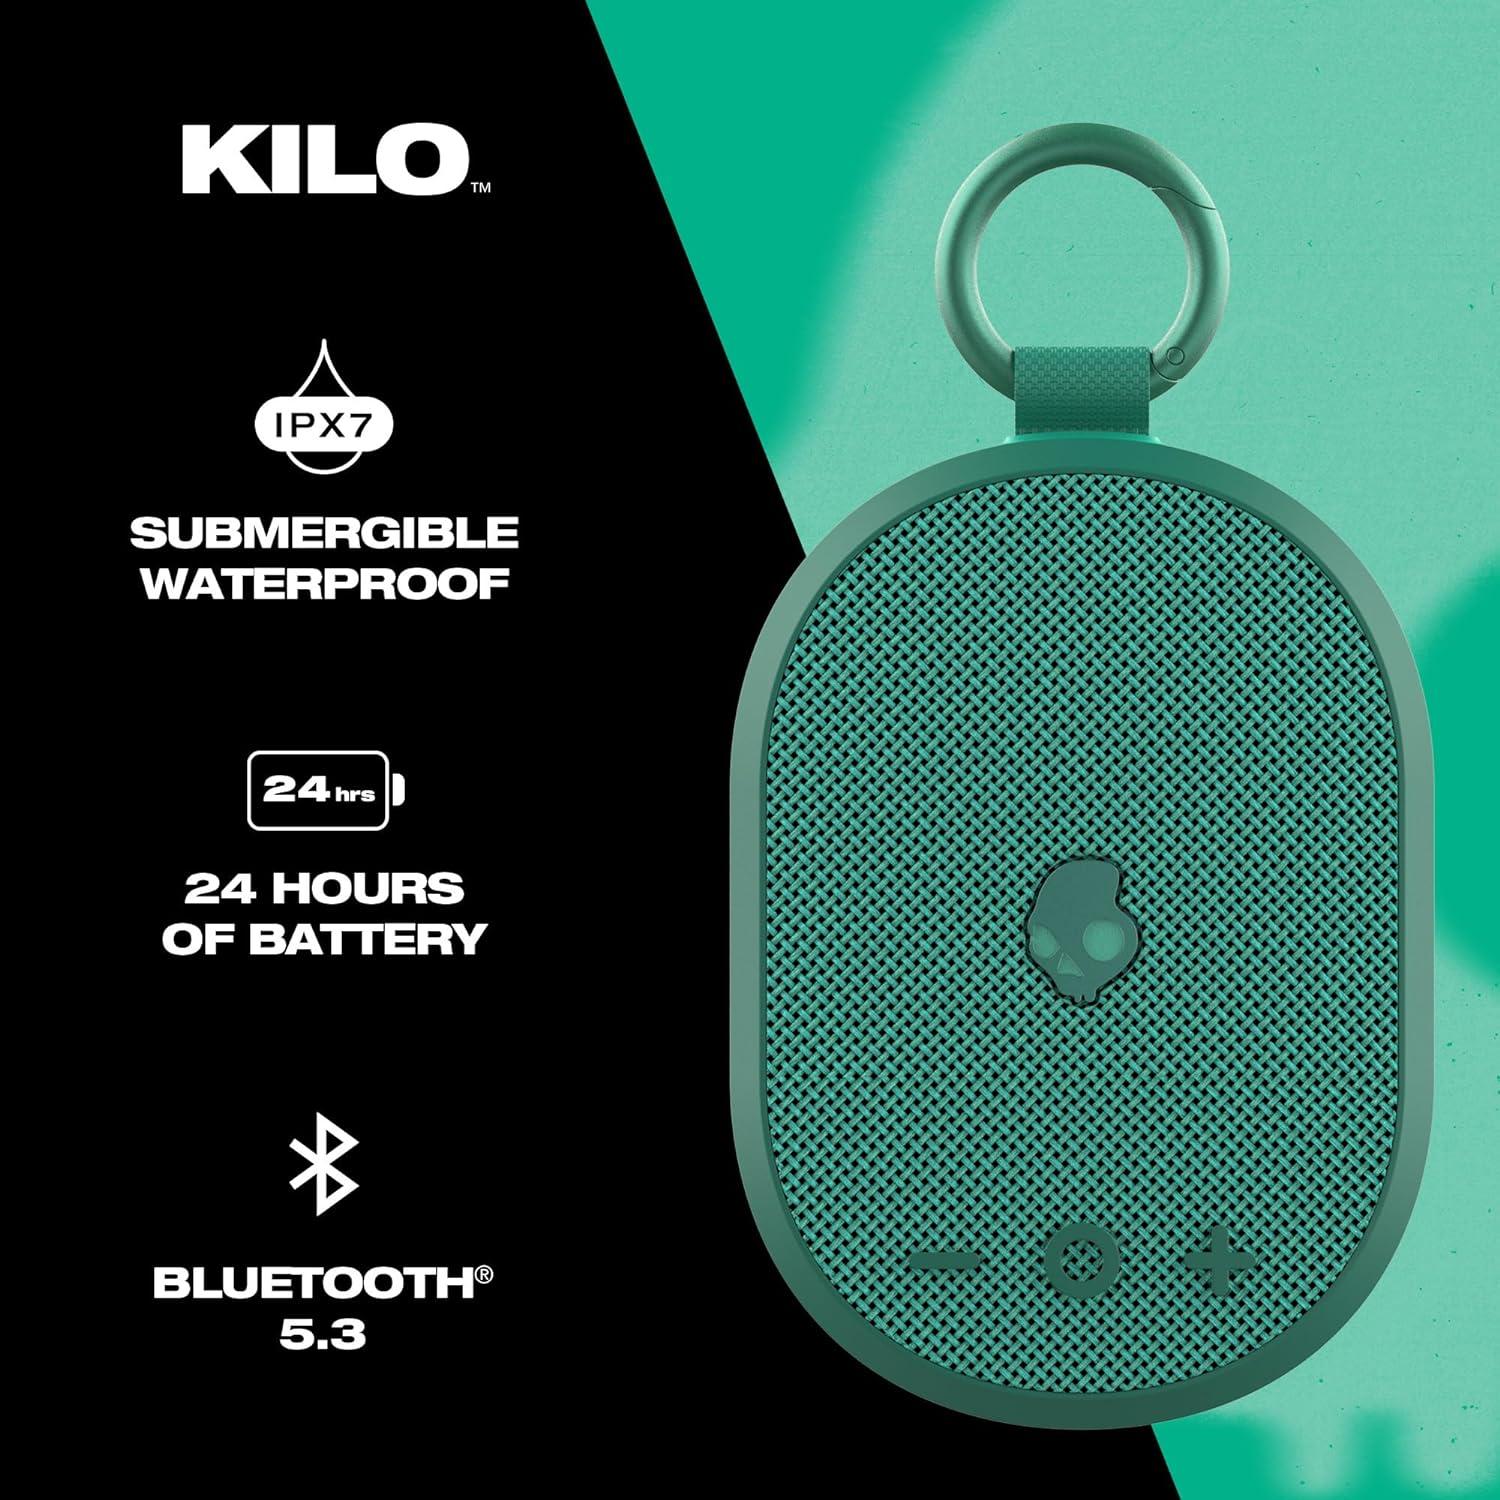 Skullcandy Kilo Wireless Bluetooth Speaker - IPX7 Waterproof Mini